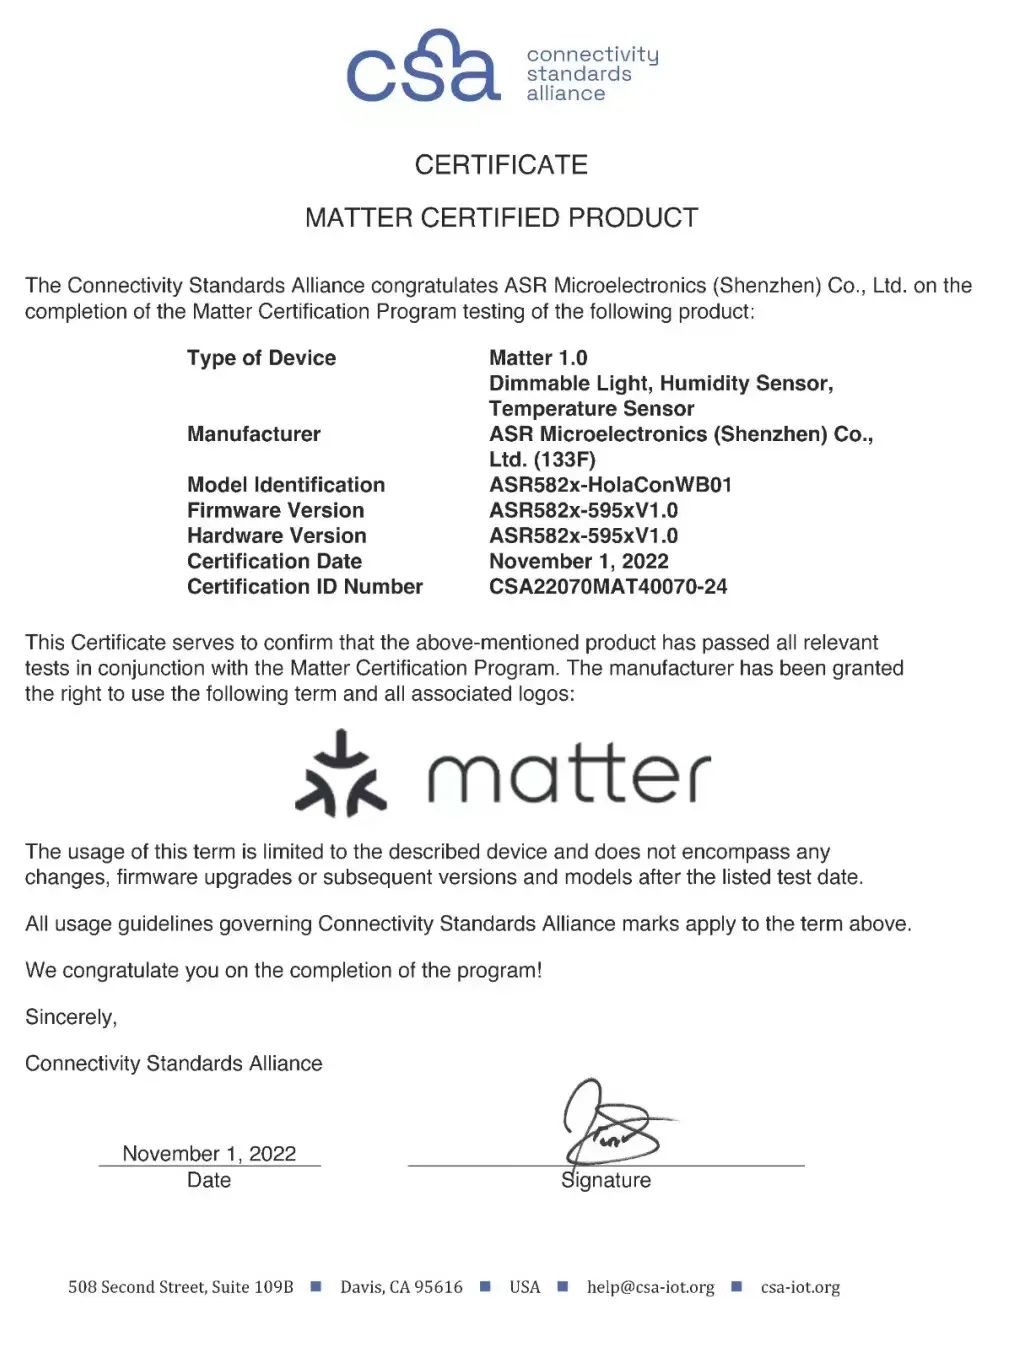 翱捷科技ASR582X系列芯片首批通过 <b>Matter</b> 1.0 认证